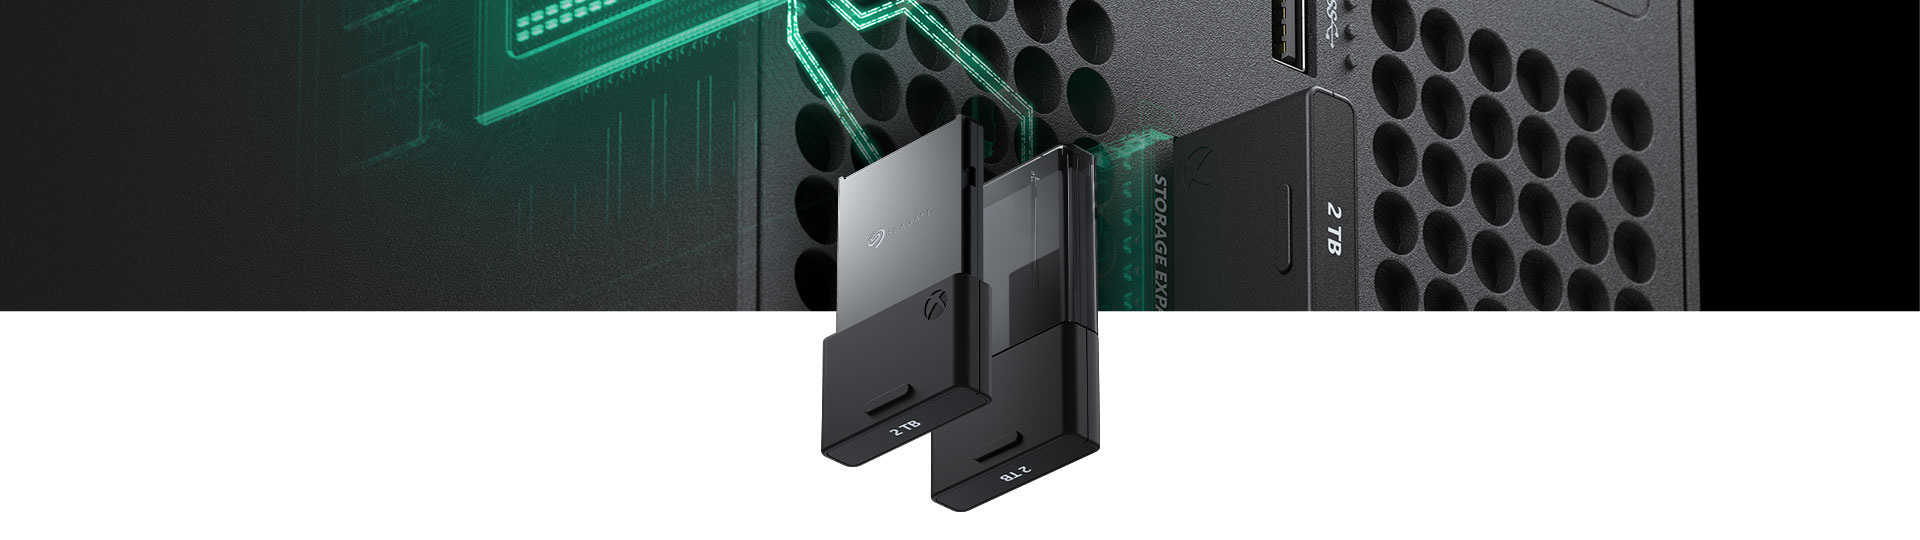 Κάρτα επέκτασης χώρου αποθήκευσης Seagate 2 terabyte για το Xbox Series X με κοντινή όψη που εισέρχεται σε ένα Xbox Series X